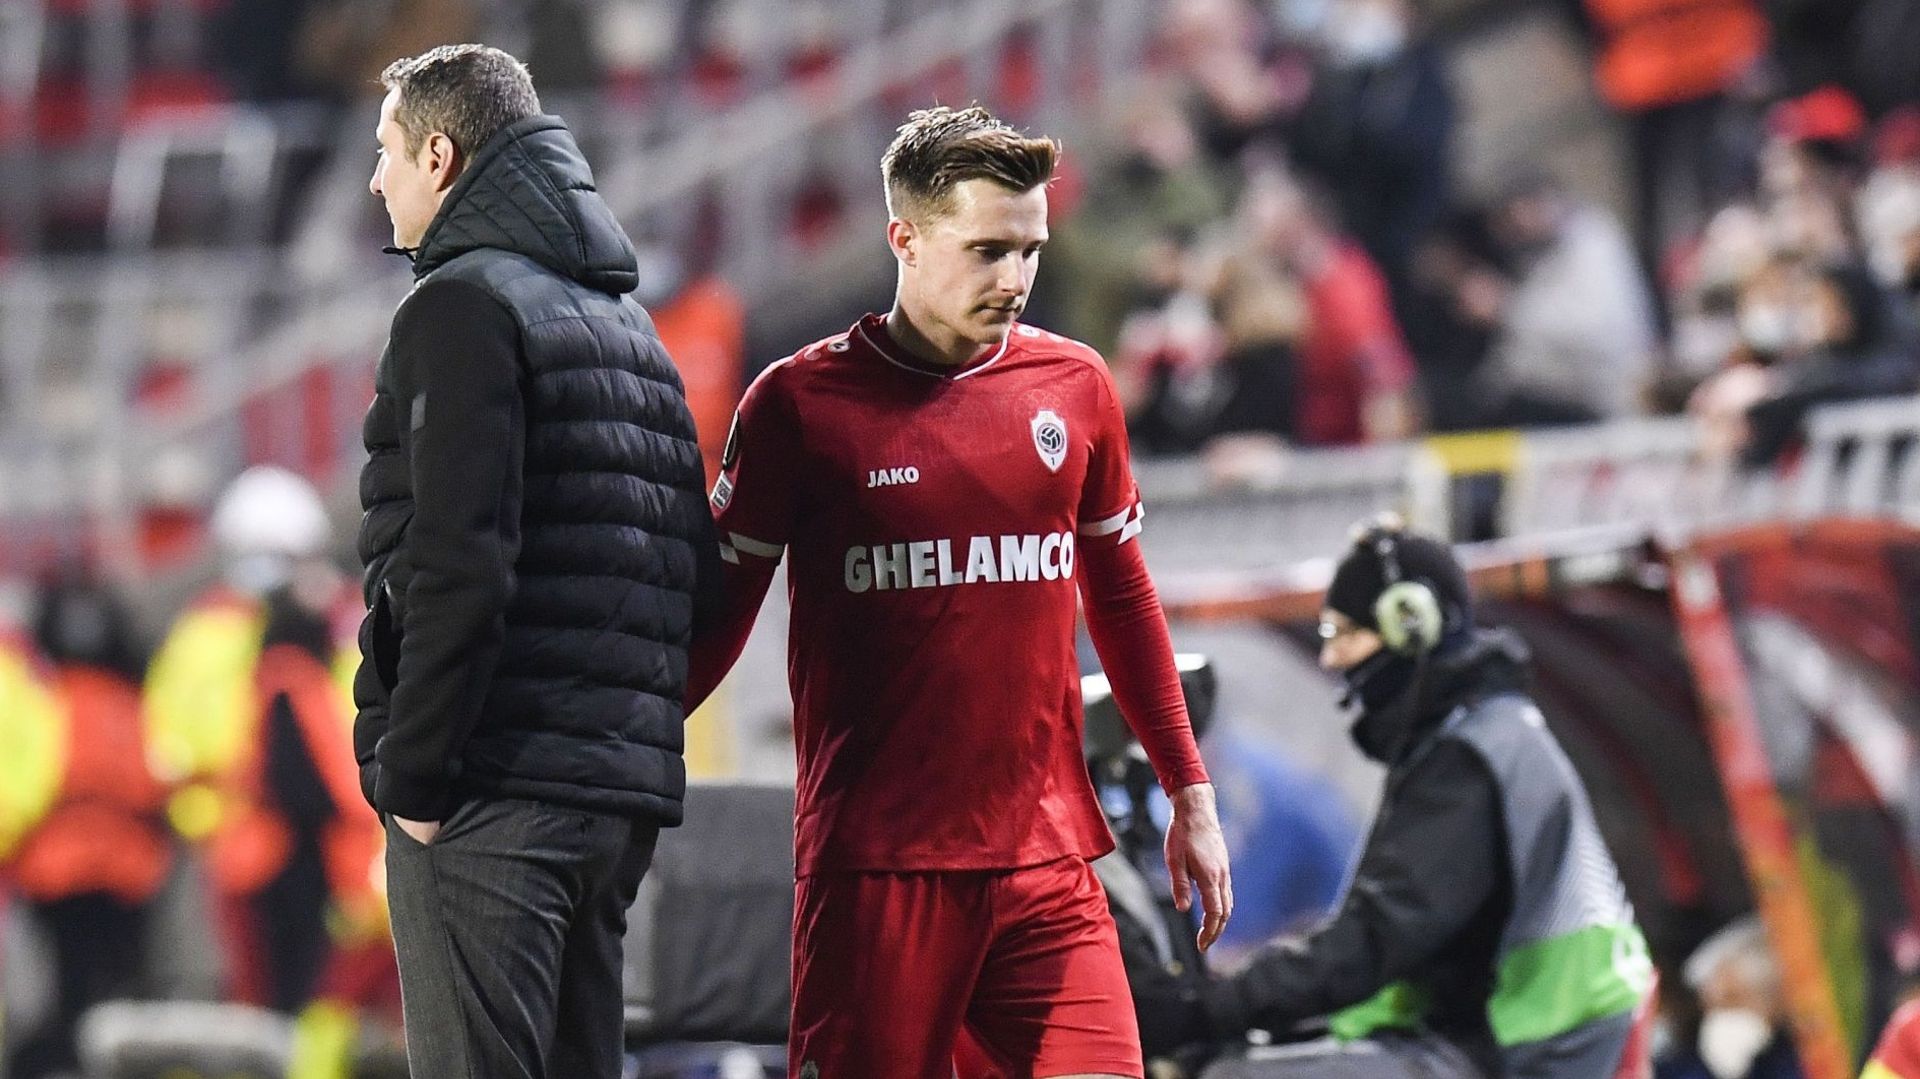 Mercato : L'Antwerp et St. Pauli ont trouvé un accord pour le transfert de Johannes Eggestein. L'attaquant de 24 ans va quitter le Bosuil pour rejoindre le club de 2e Bundesliga à Hambourg.